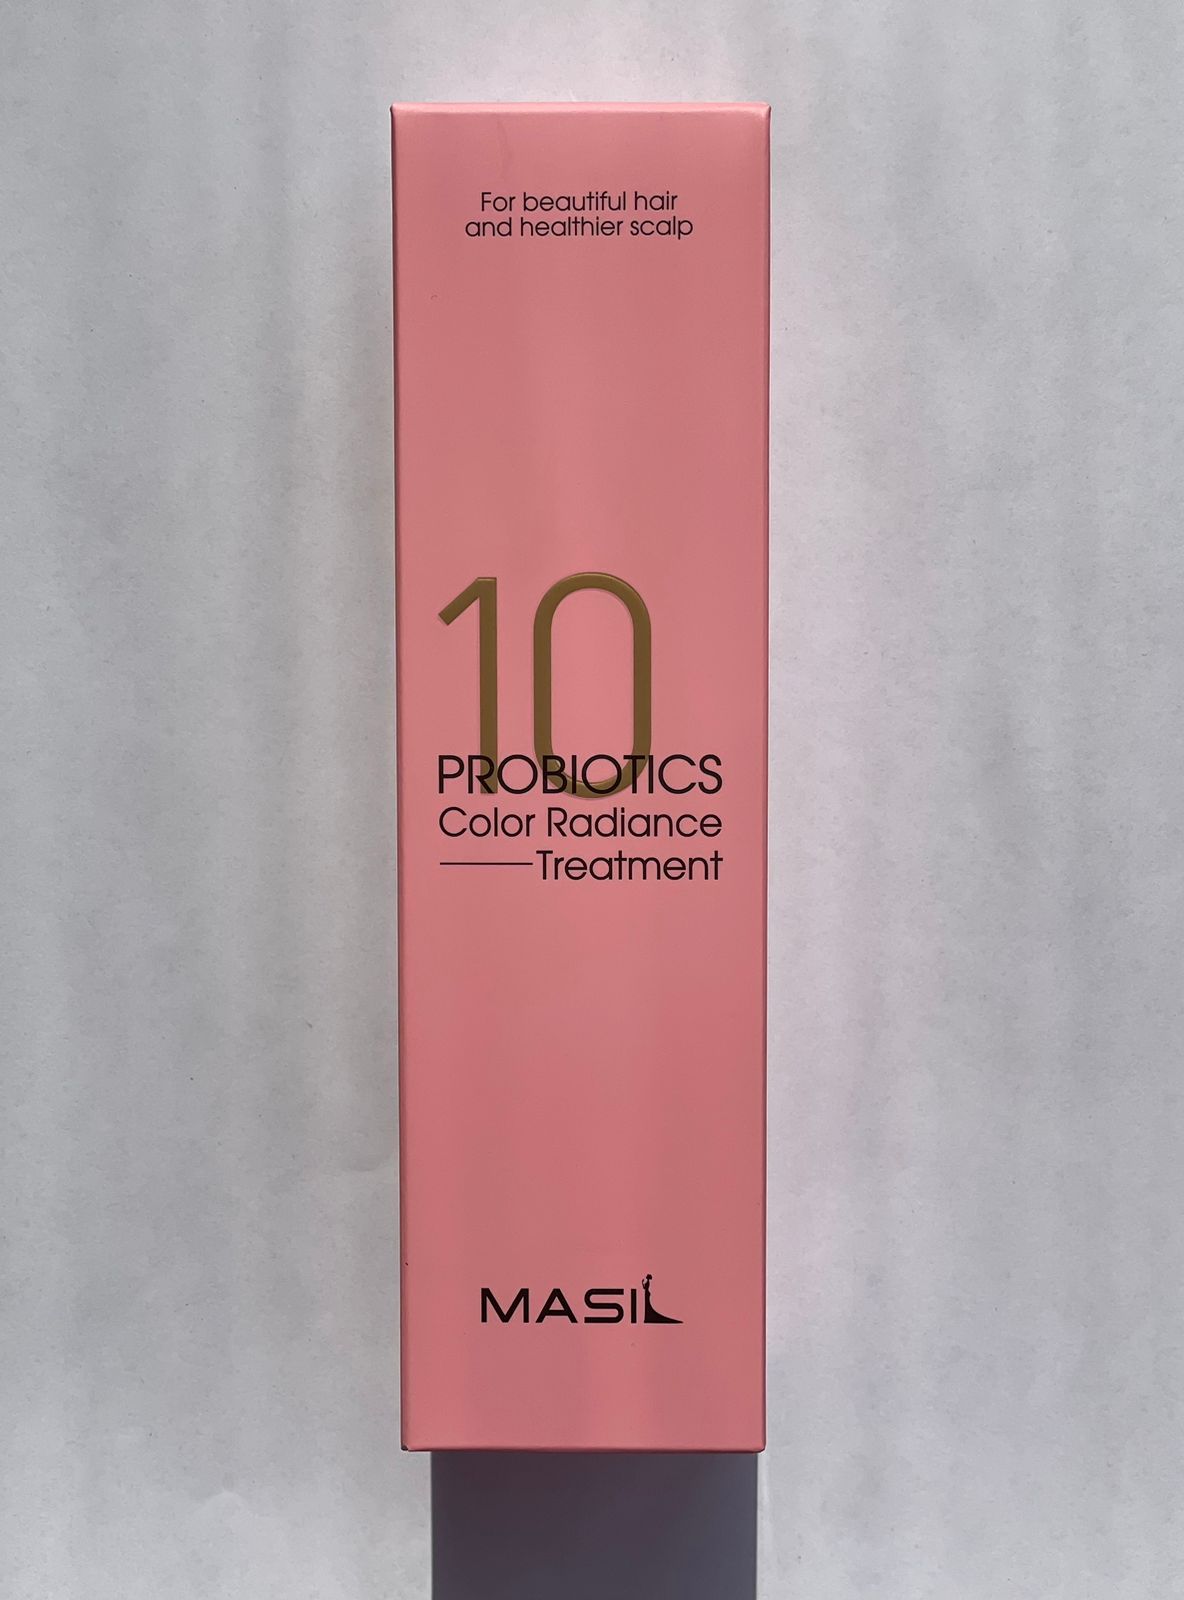 Маска Masil с пробиотиками для защиты цвета Probiotics Color Radiance Treatmant 300 мл bioblas шампунь против выпадения волос интенсивное увлажнение с пробиотиками и пантенолом probiotics panthenol